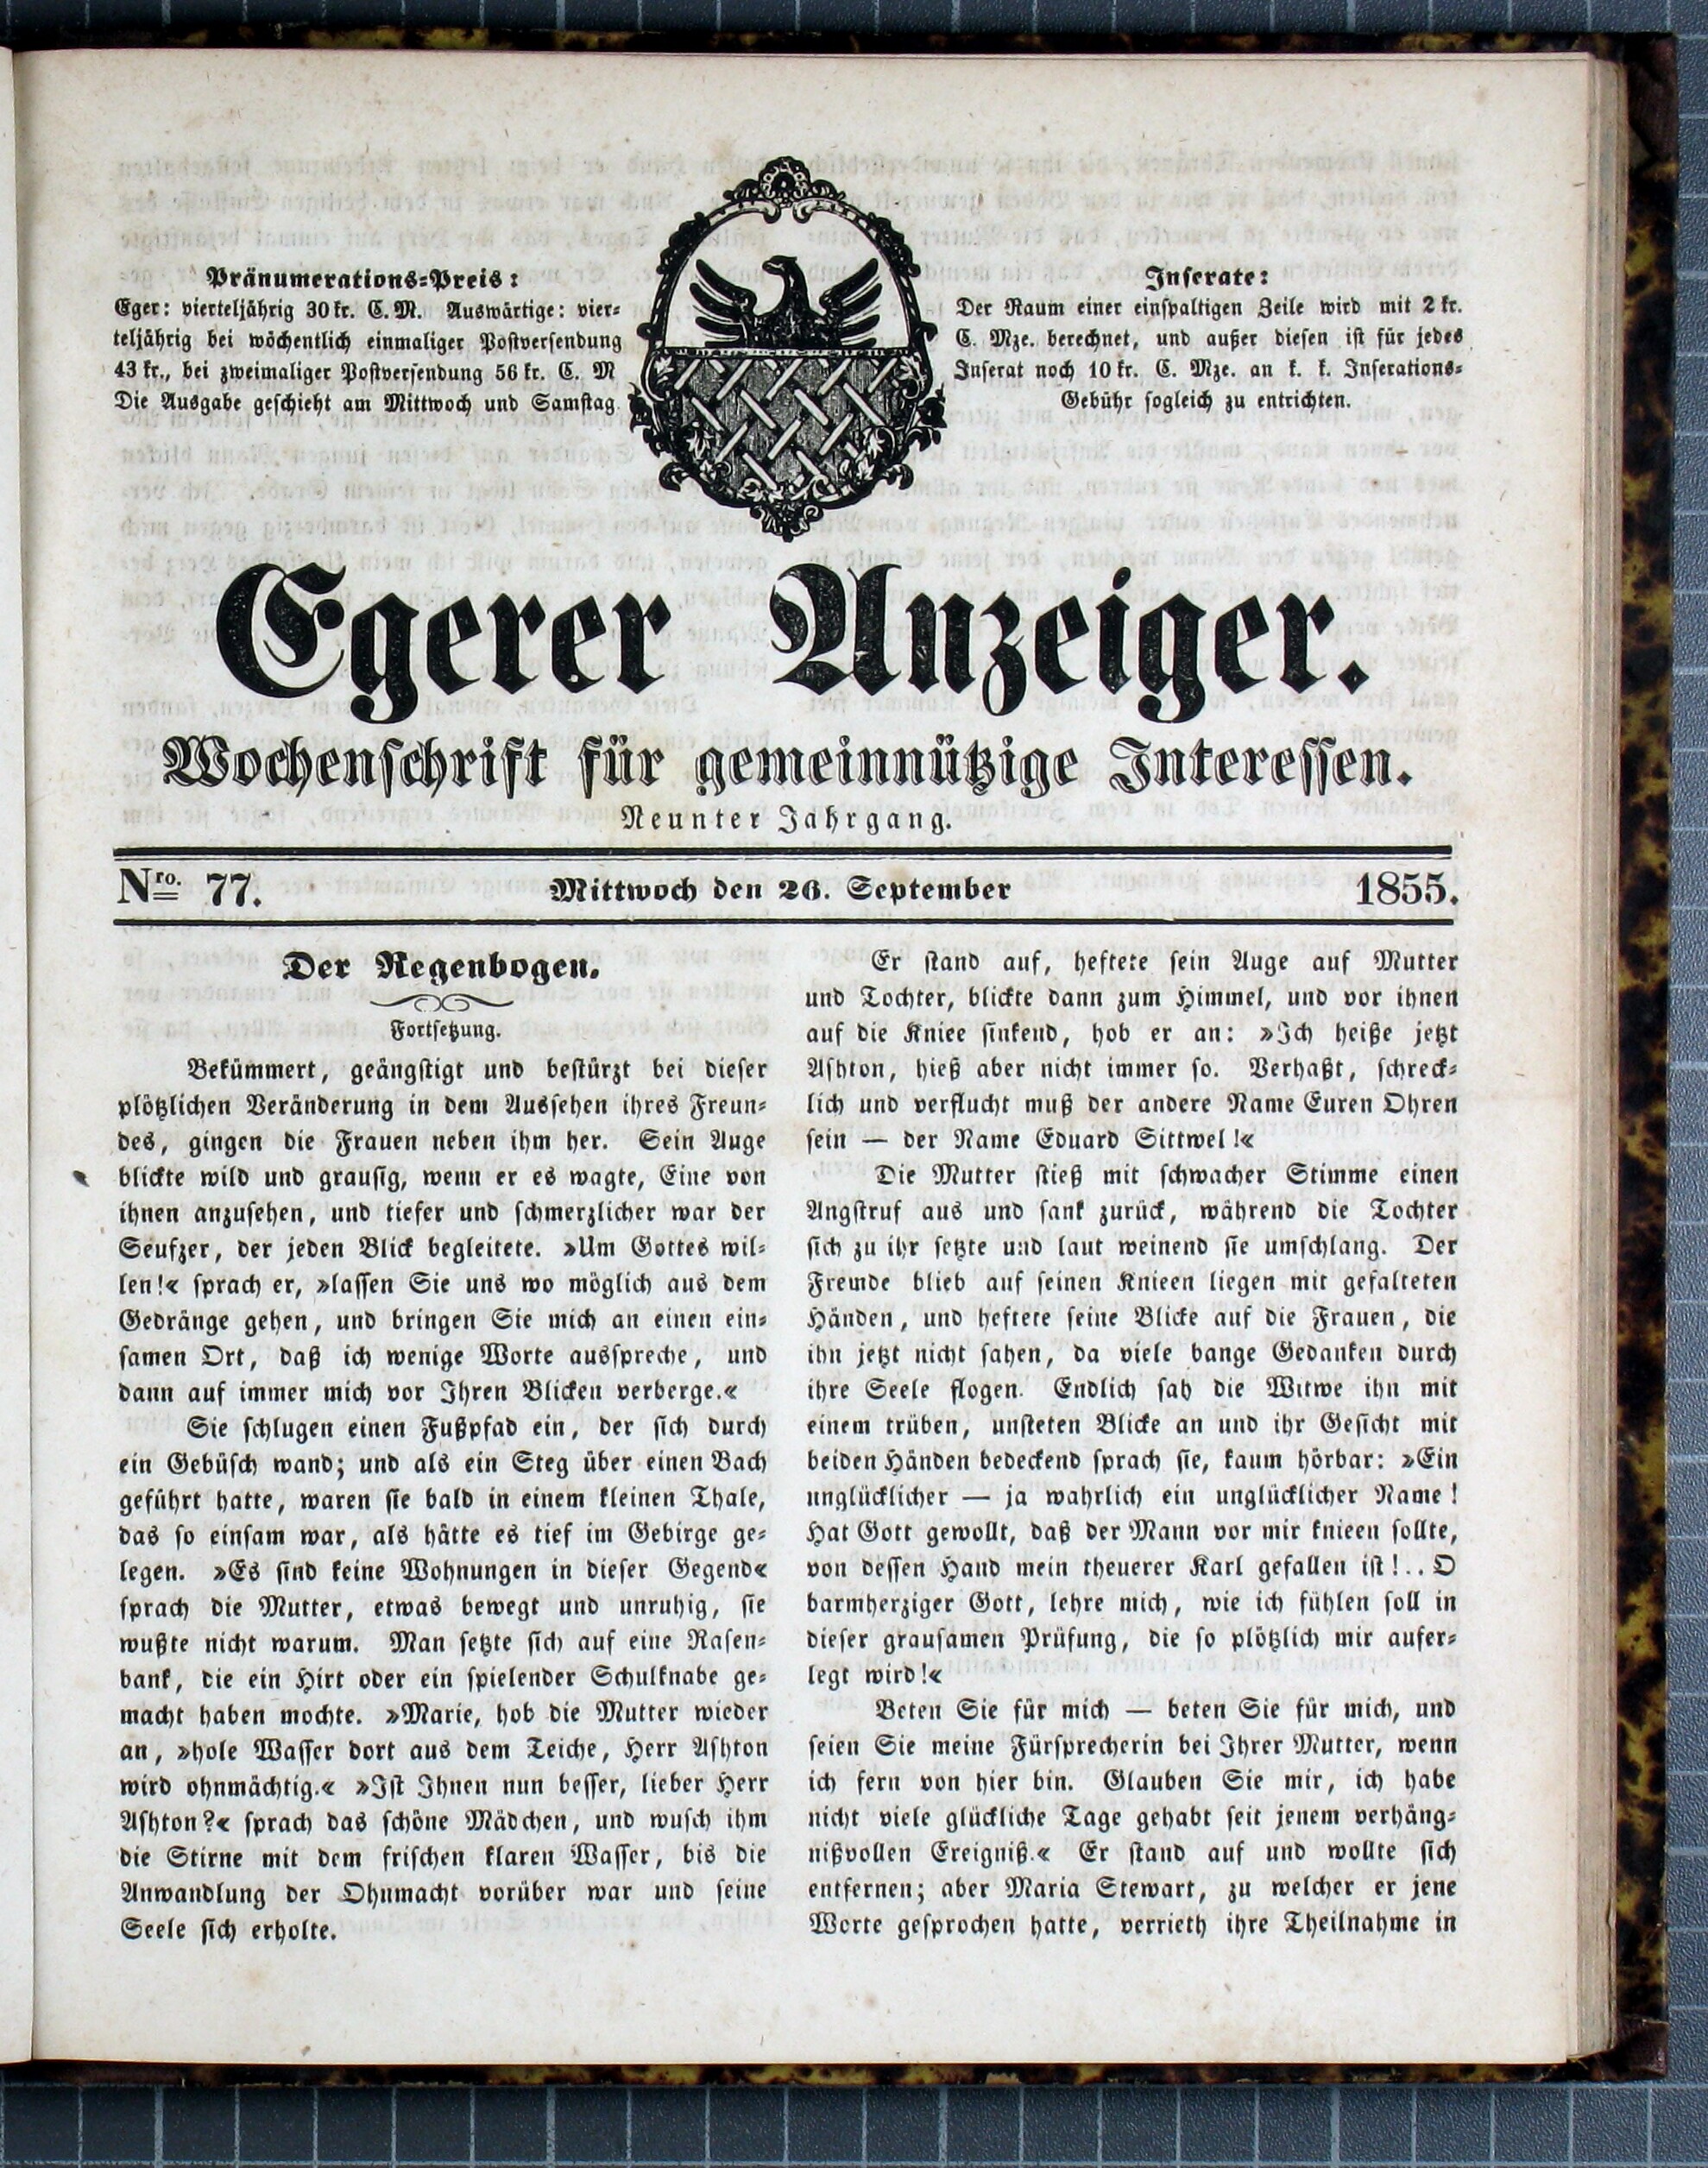 1. egerer-anzeiger-1855-09-26-n77_1585